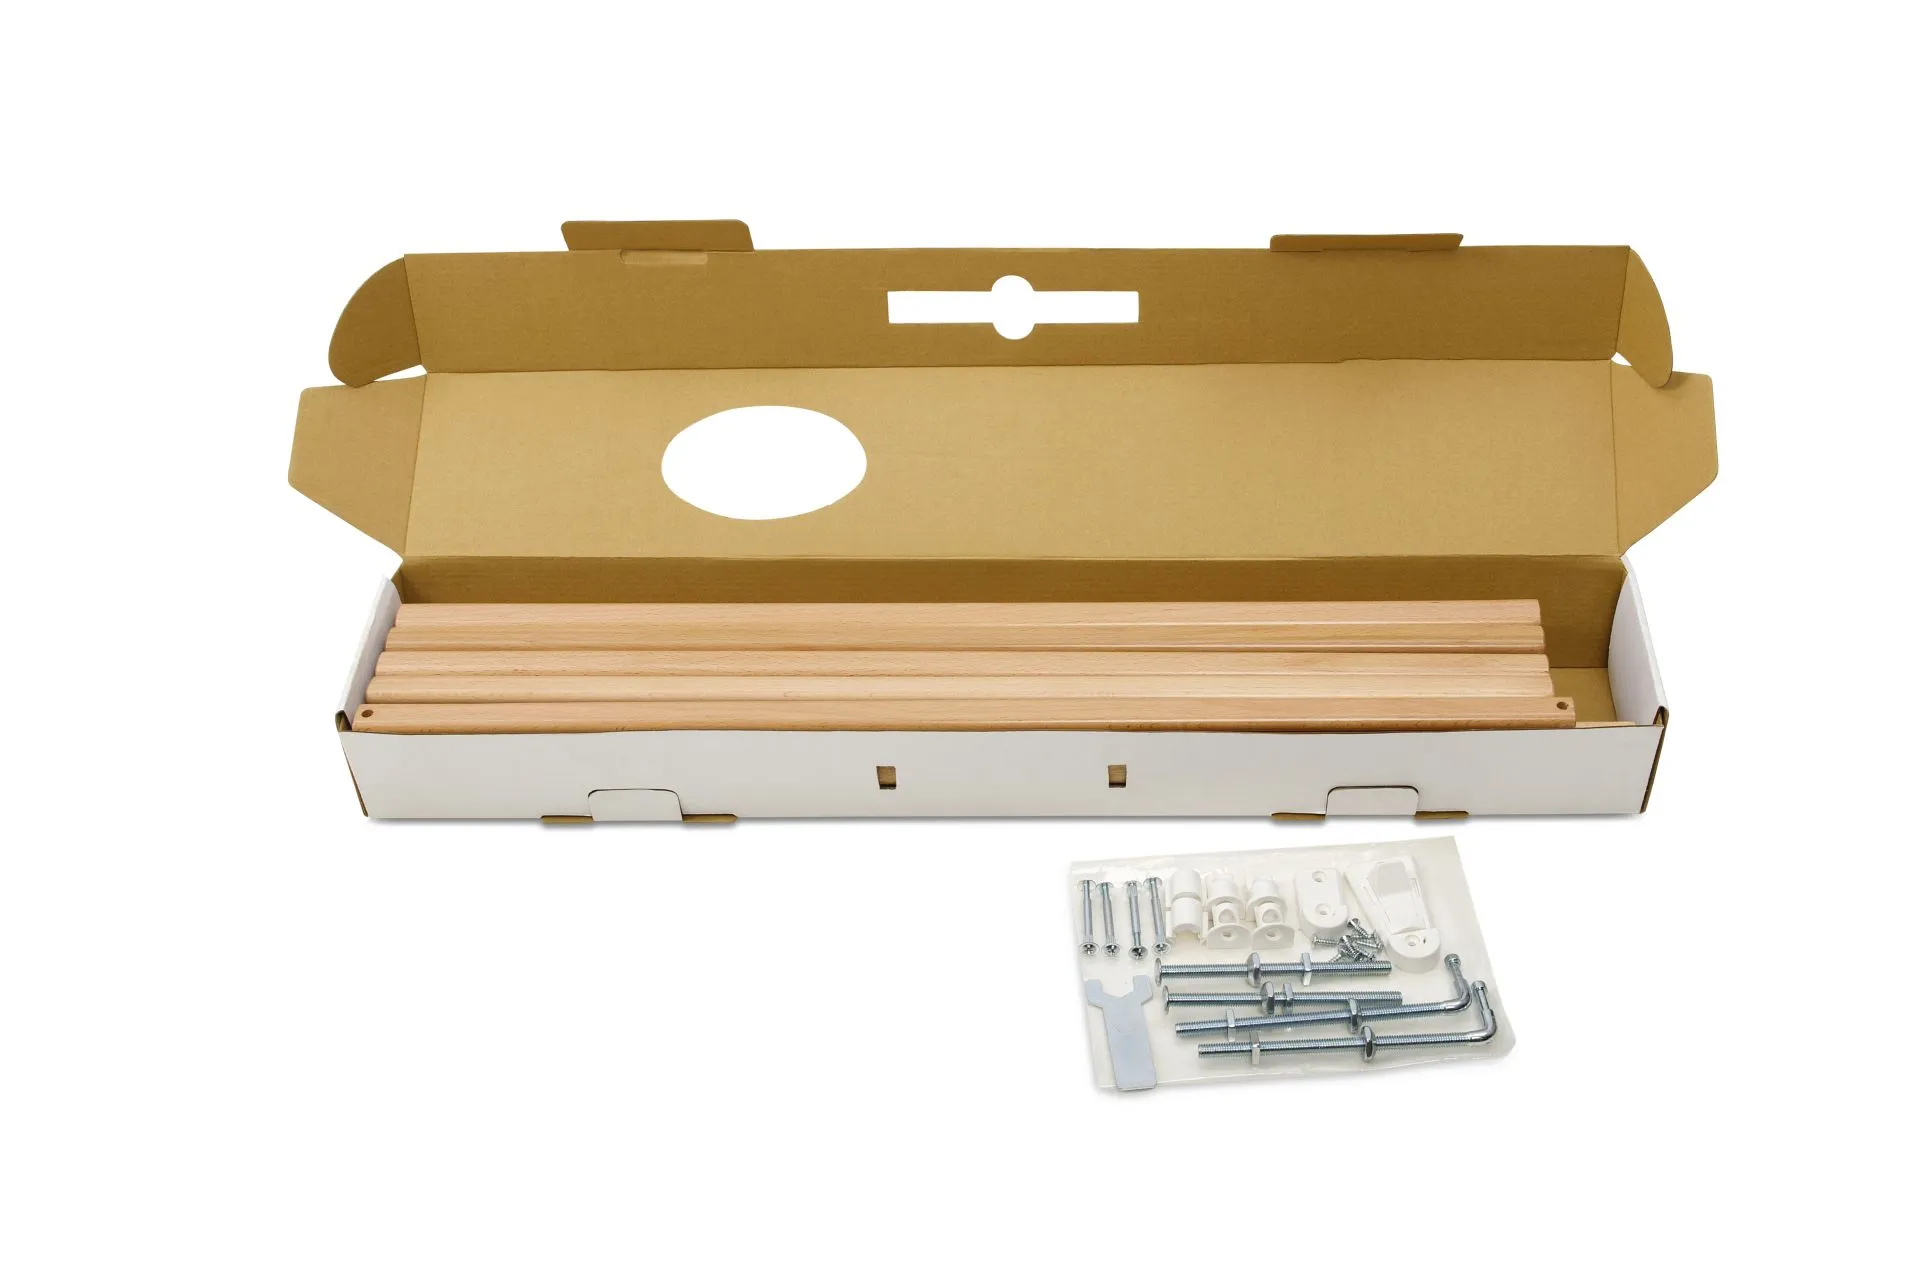 Tür- und Treppenschutzgitter Modilok für Öffnungen 63-103.5 cm aus Holz